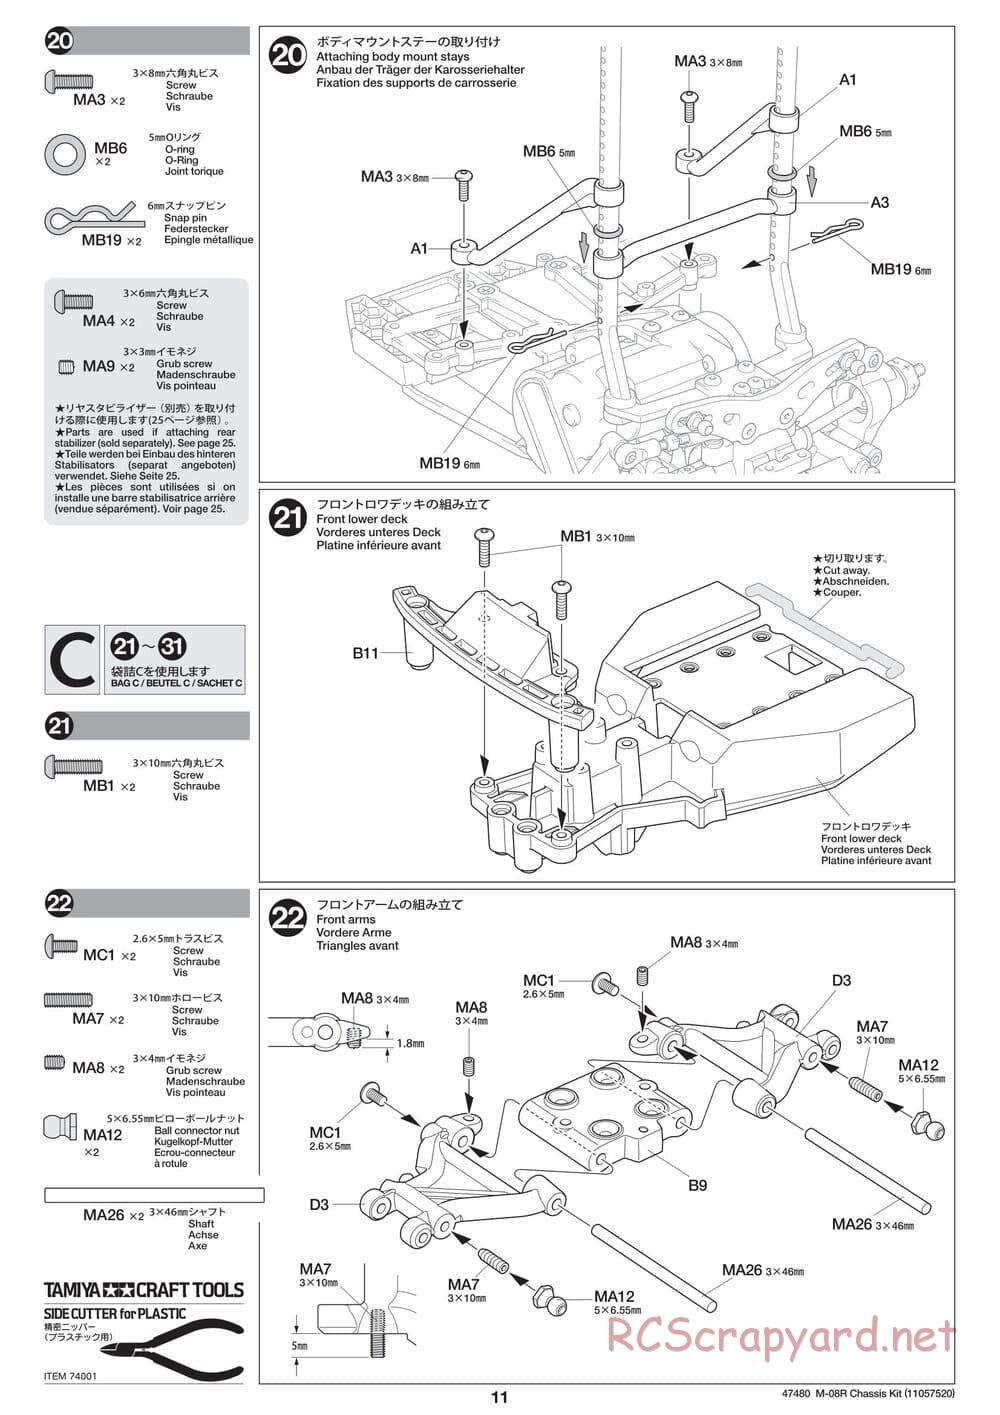 Tamiya - M-08R Chassis - Manual - Page 11